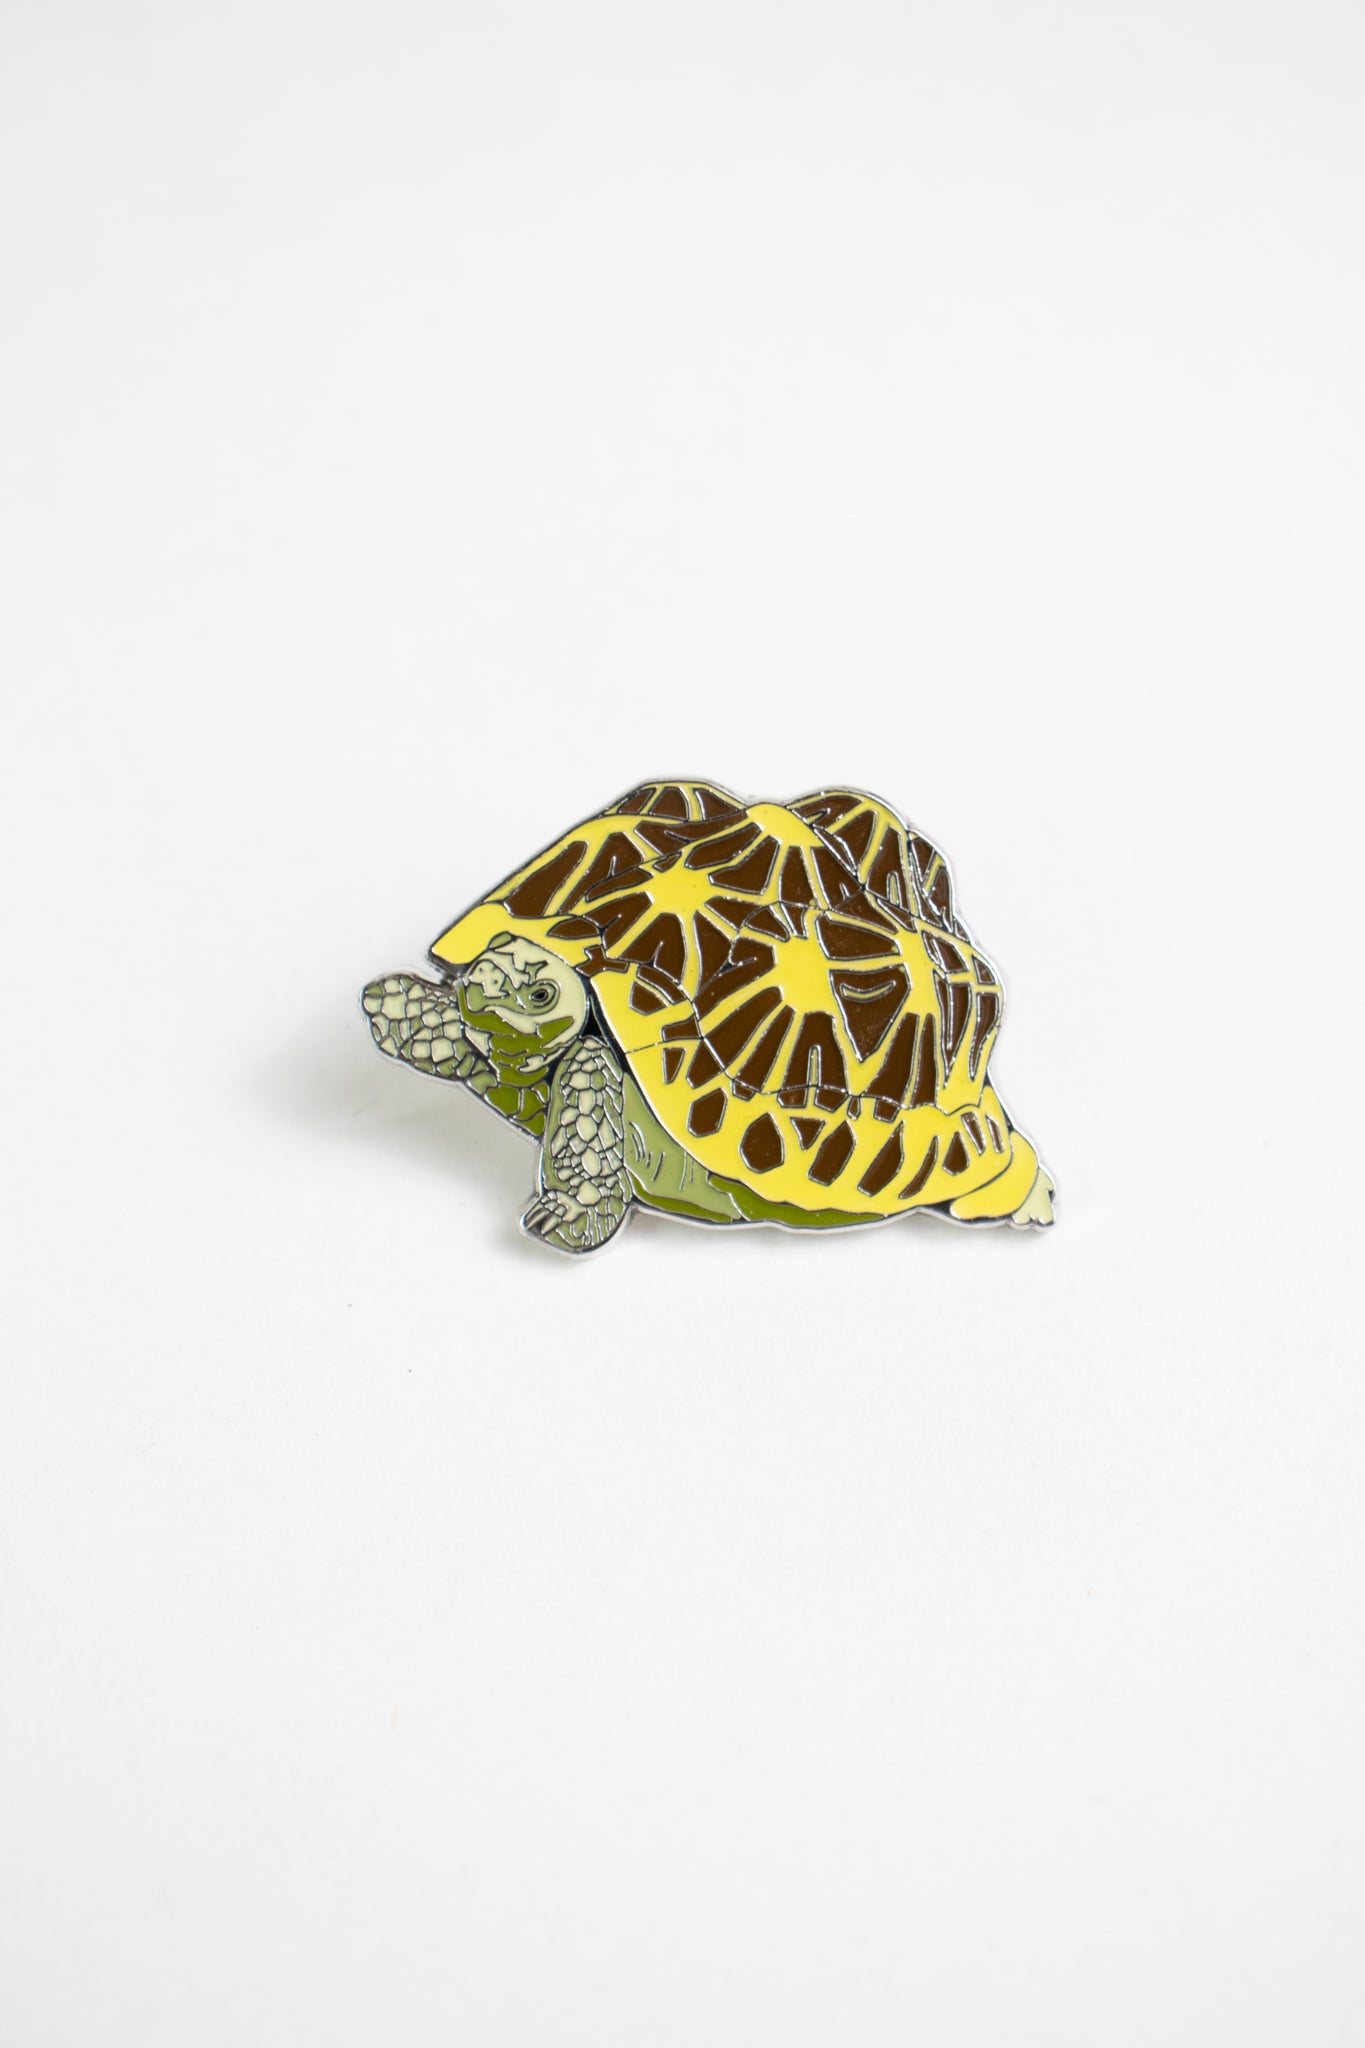 Indian Star Tortoise Enamel Pin